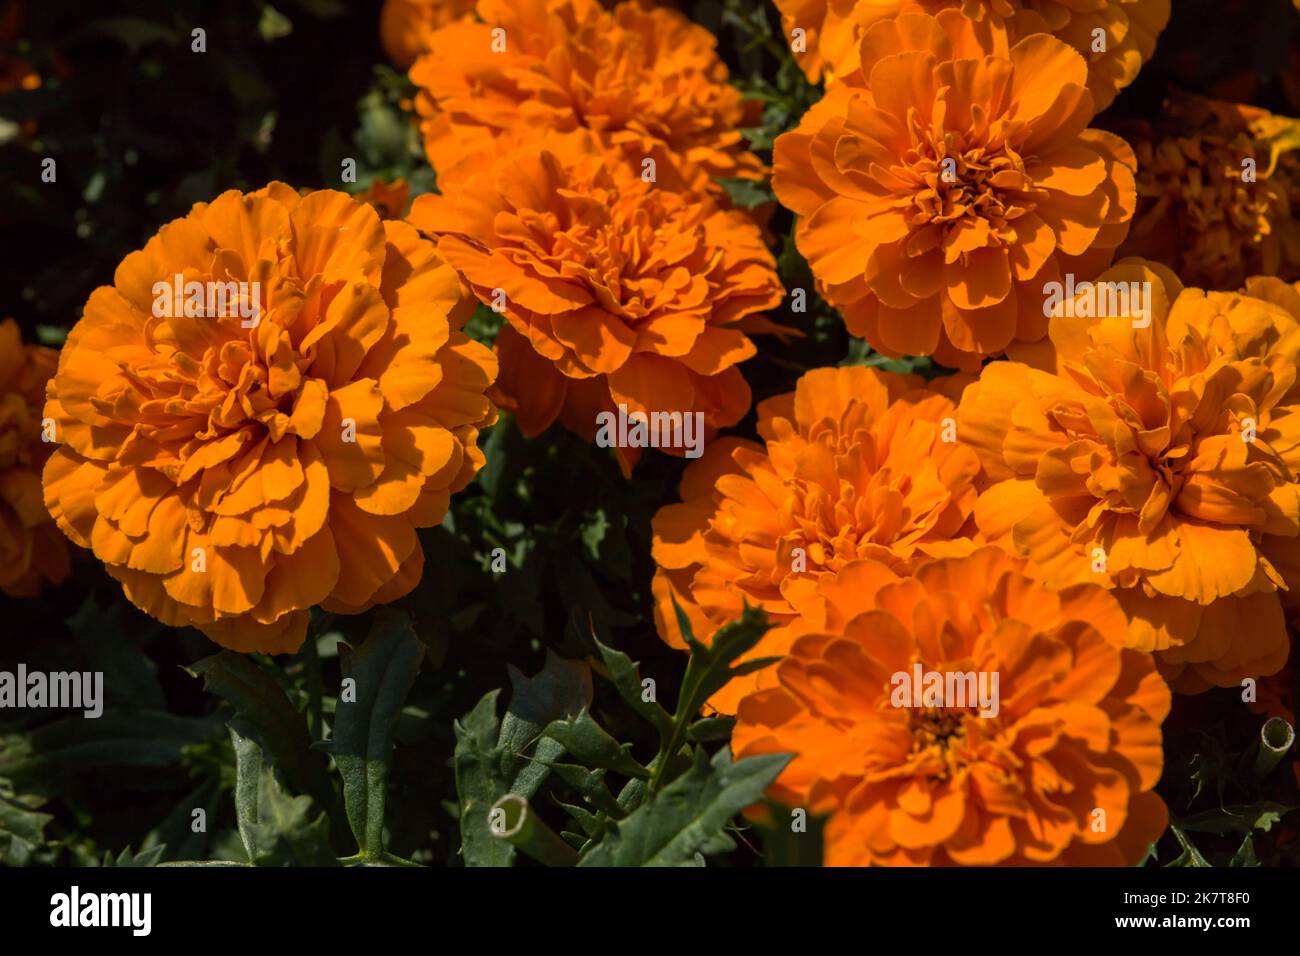 Fond floral - fleurs brillantes orange marigolds - fleur traditionnelle, qui est utilisé comme décoration, assaisonnement, médecine Banque D'Images